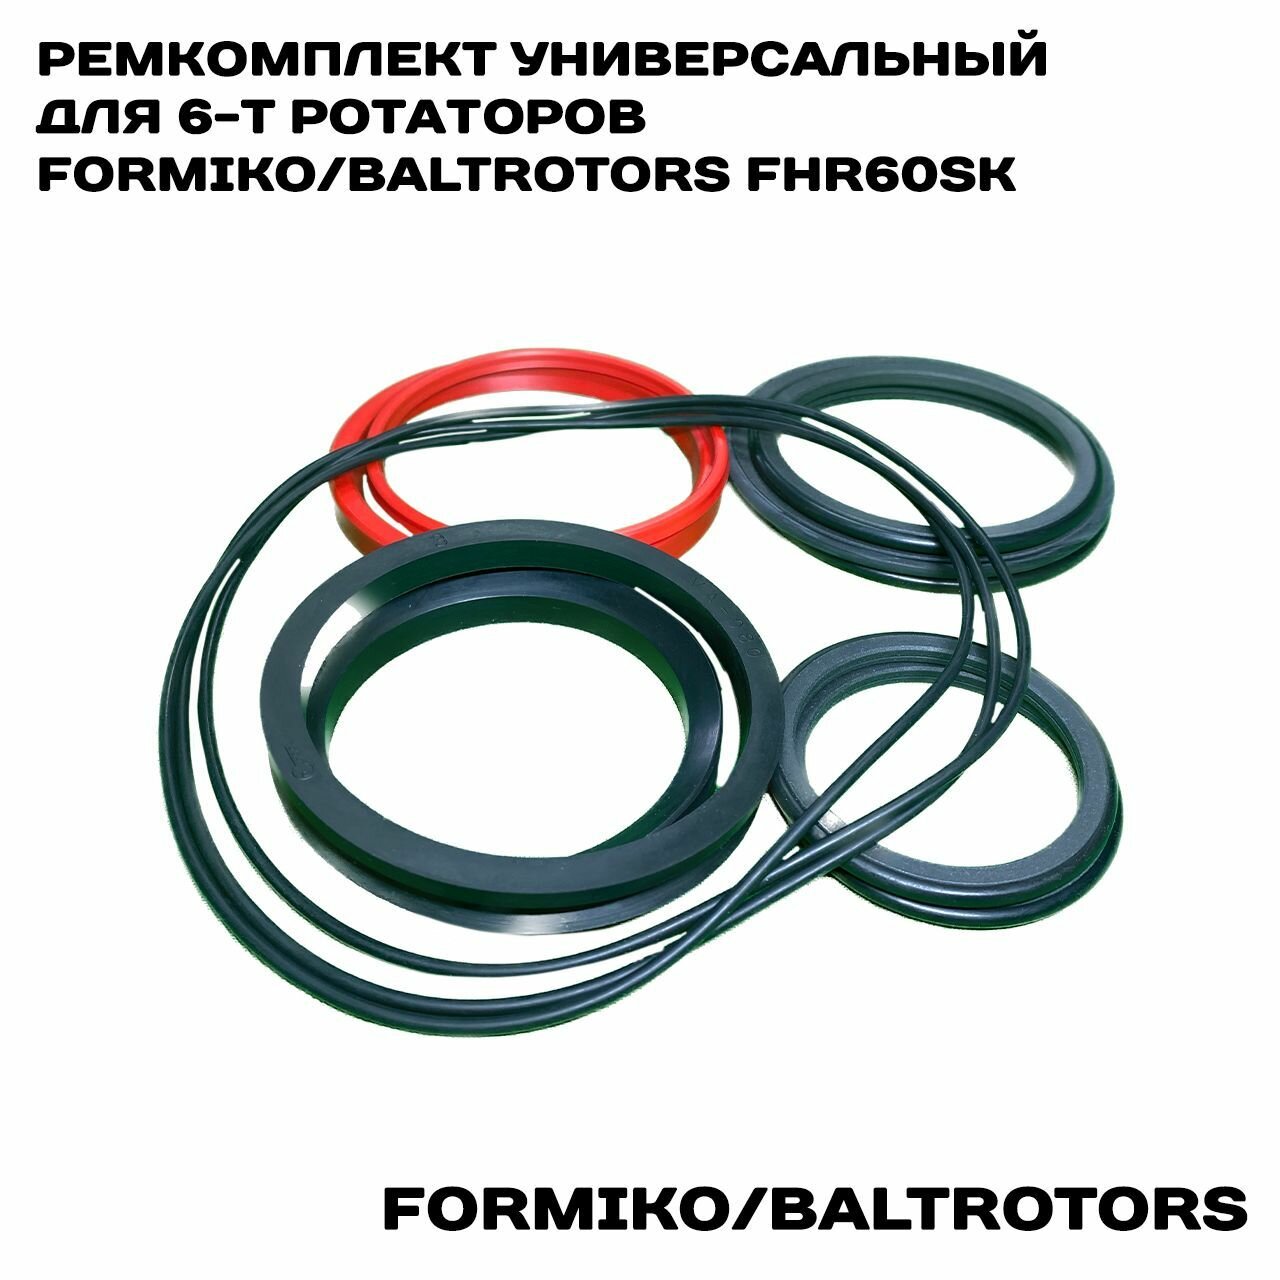 Ремкомплект для 6-т ротаторов Formiko/Baltrotors (универсальный) FHR60SK